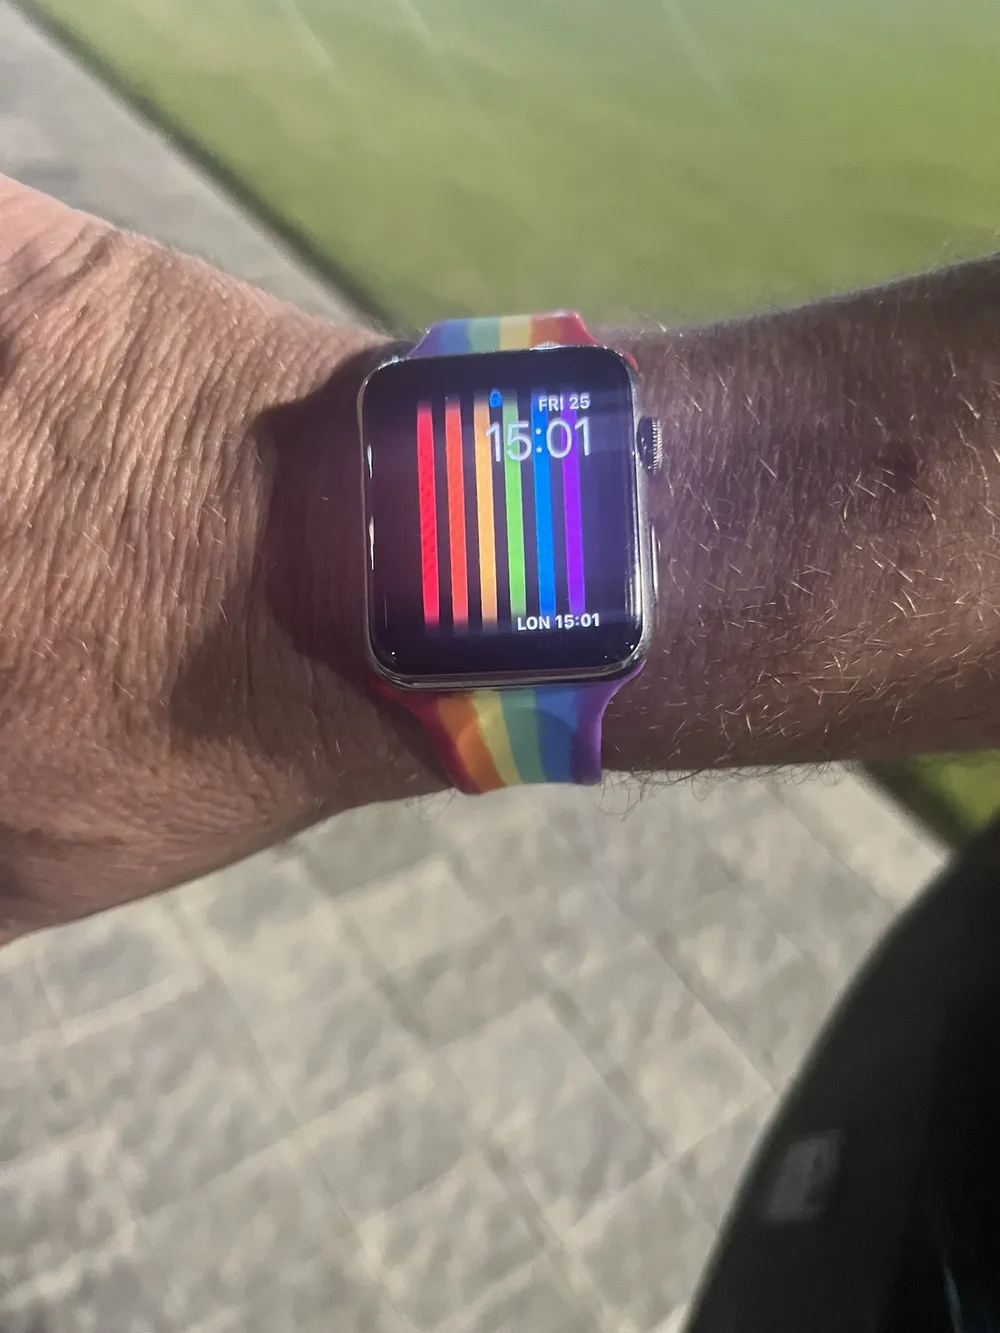 Relógio de cinegrafista da BBC incomodou seguranças de estádio da Copa do Mundo por ter pulseira e visor com as cores de arco-íris